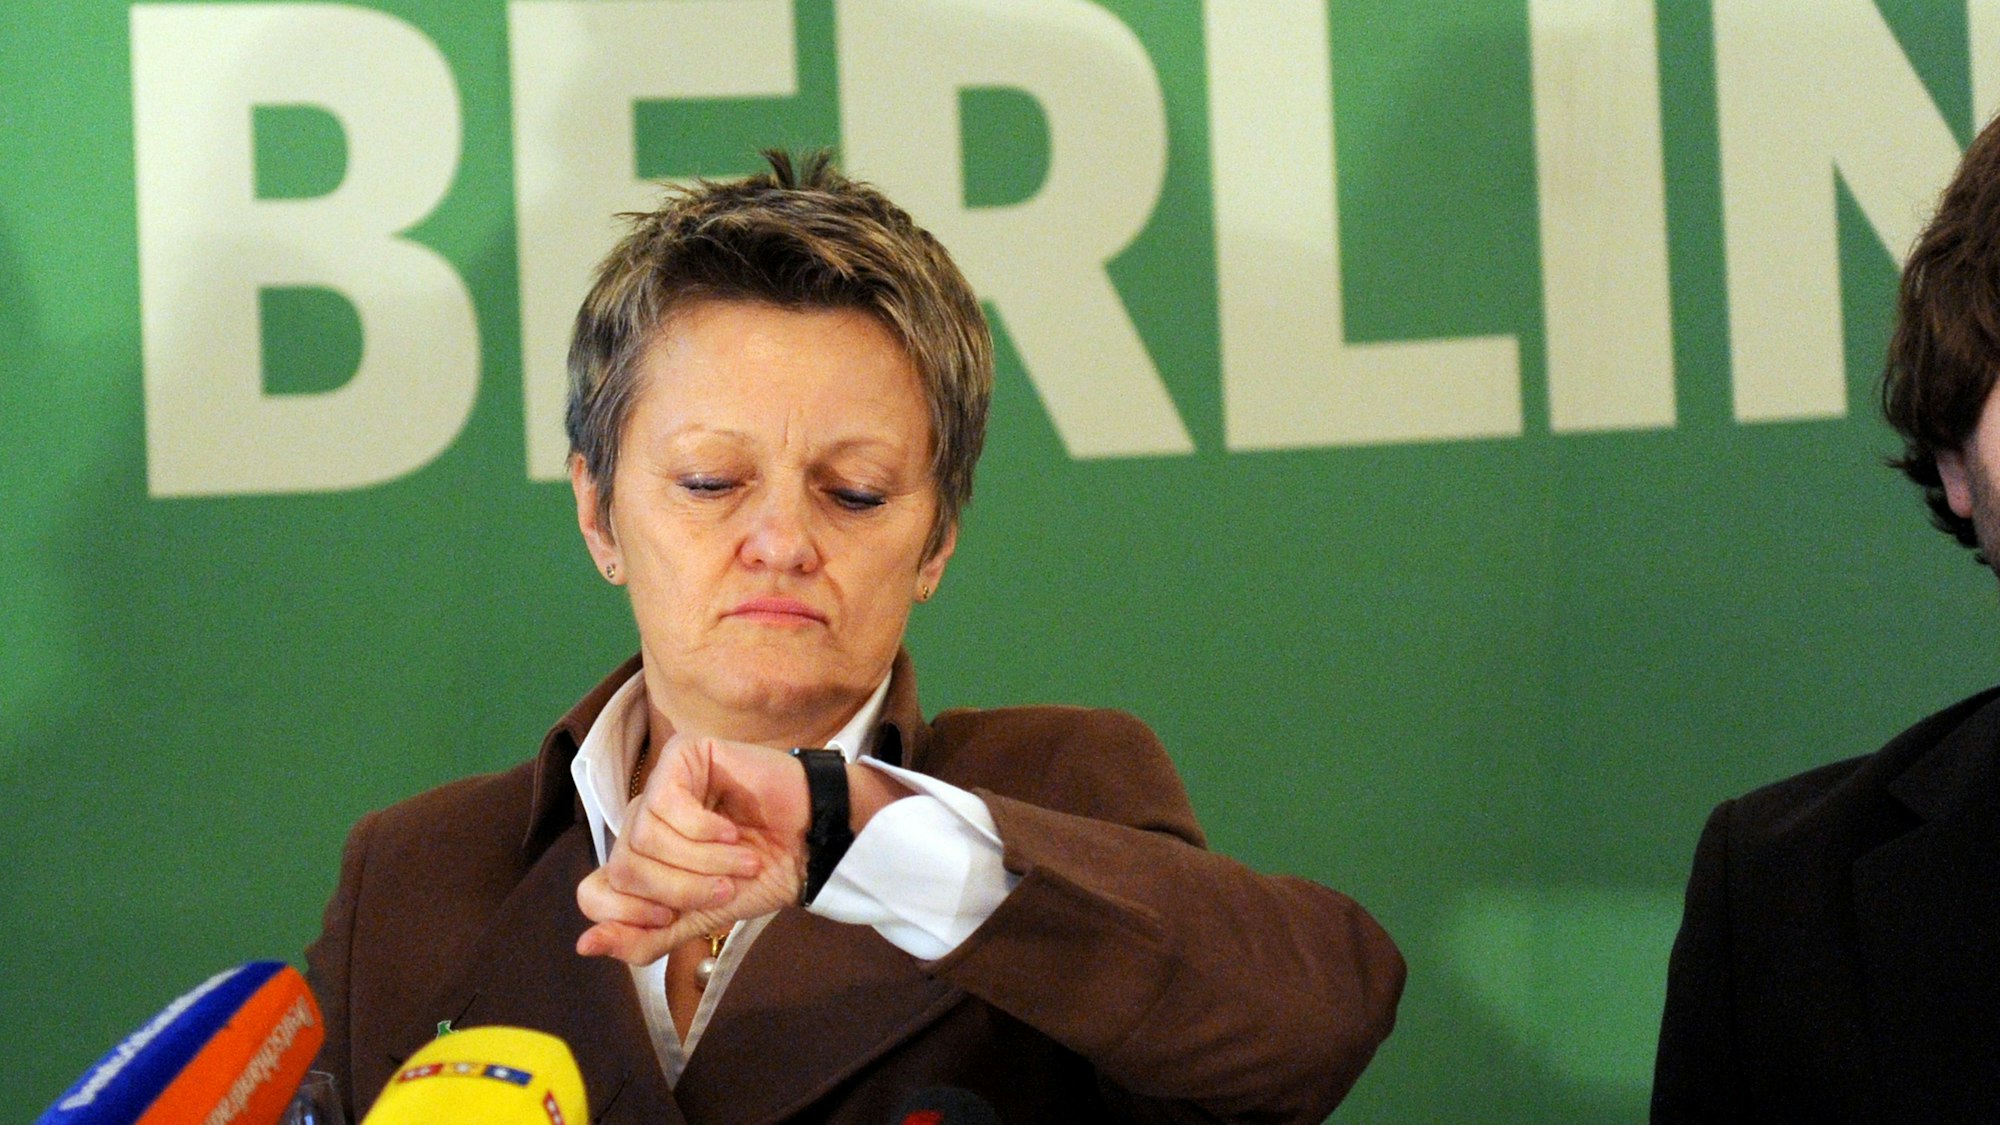 Die Grünen-Kandidatin für das Amt der Regierenden Bürgermeisterin in Berlin, die Vorsitzende der Bundestagsfraktion von Bündnis 90/Die Grünen, Renate Künast, stellt am Mittwoch (02.02.2011) in Berlin den Entwurf des Grünen-Wahlprogramms vor und blickt dabei auf die Uhr. Die Repräsentanten für das Abgeordnetenhaus sollen am 18. September 2011 gewählt werden. Foto: Rainer Jensen dpa ++ +++ dpa-Bildfunk +++